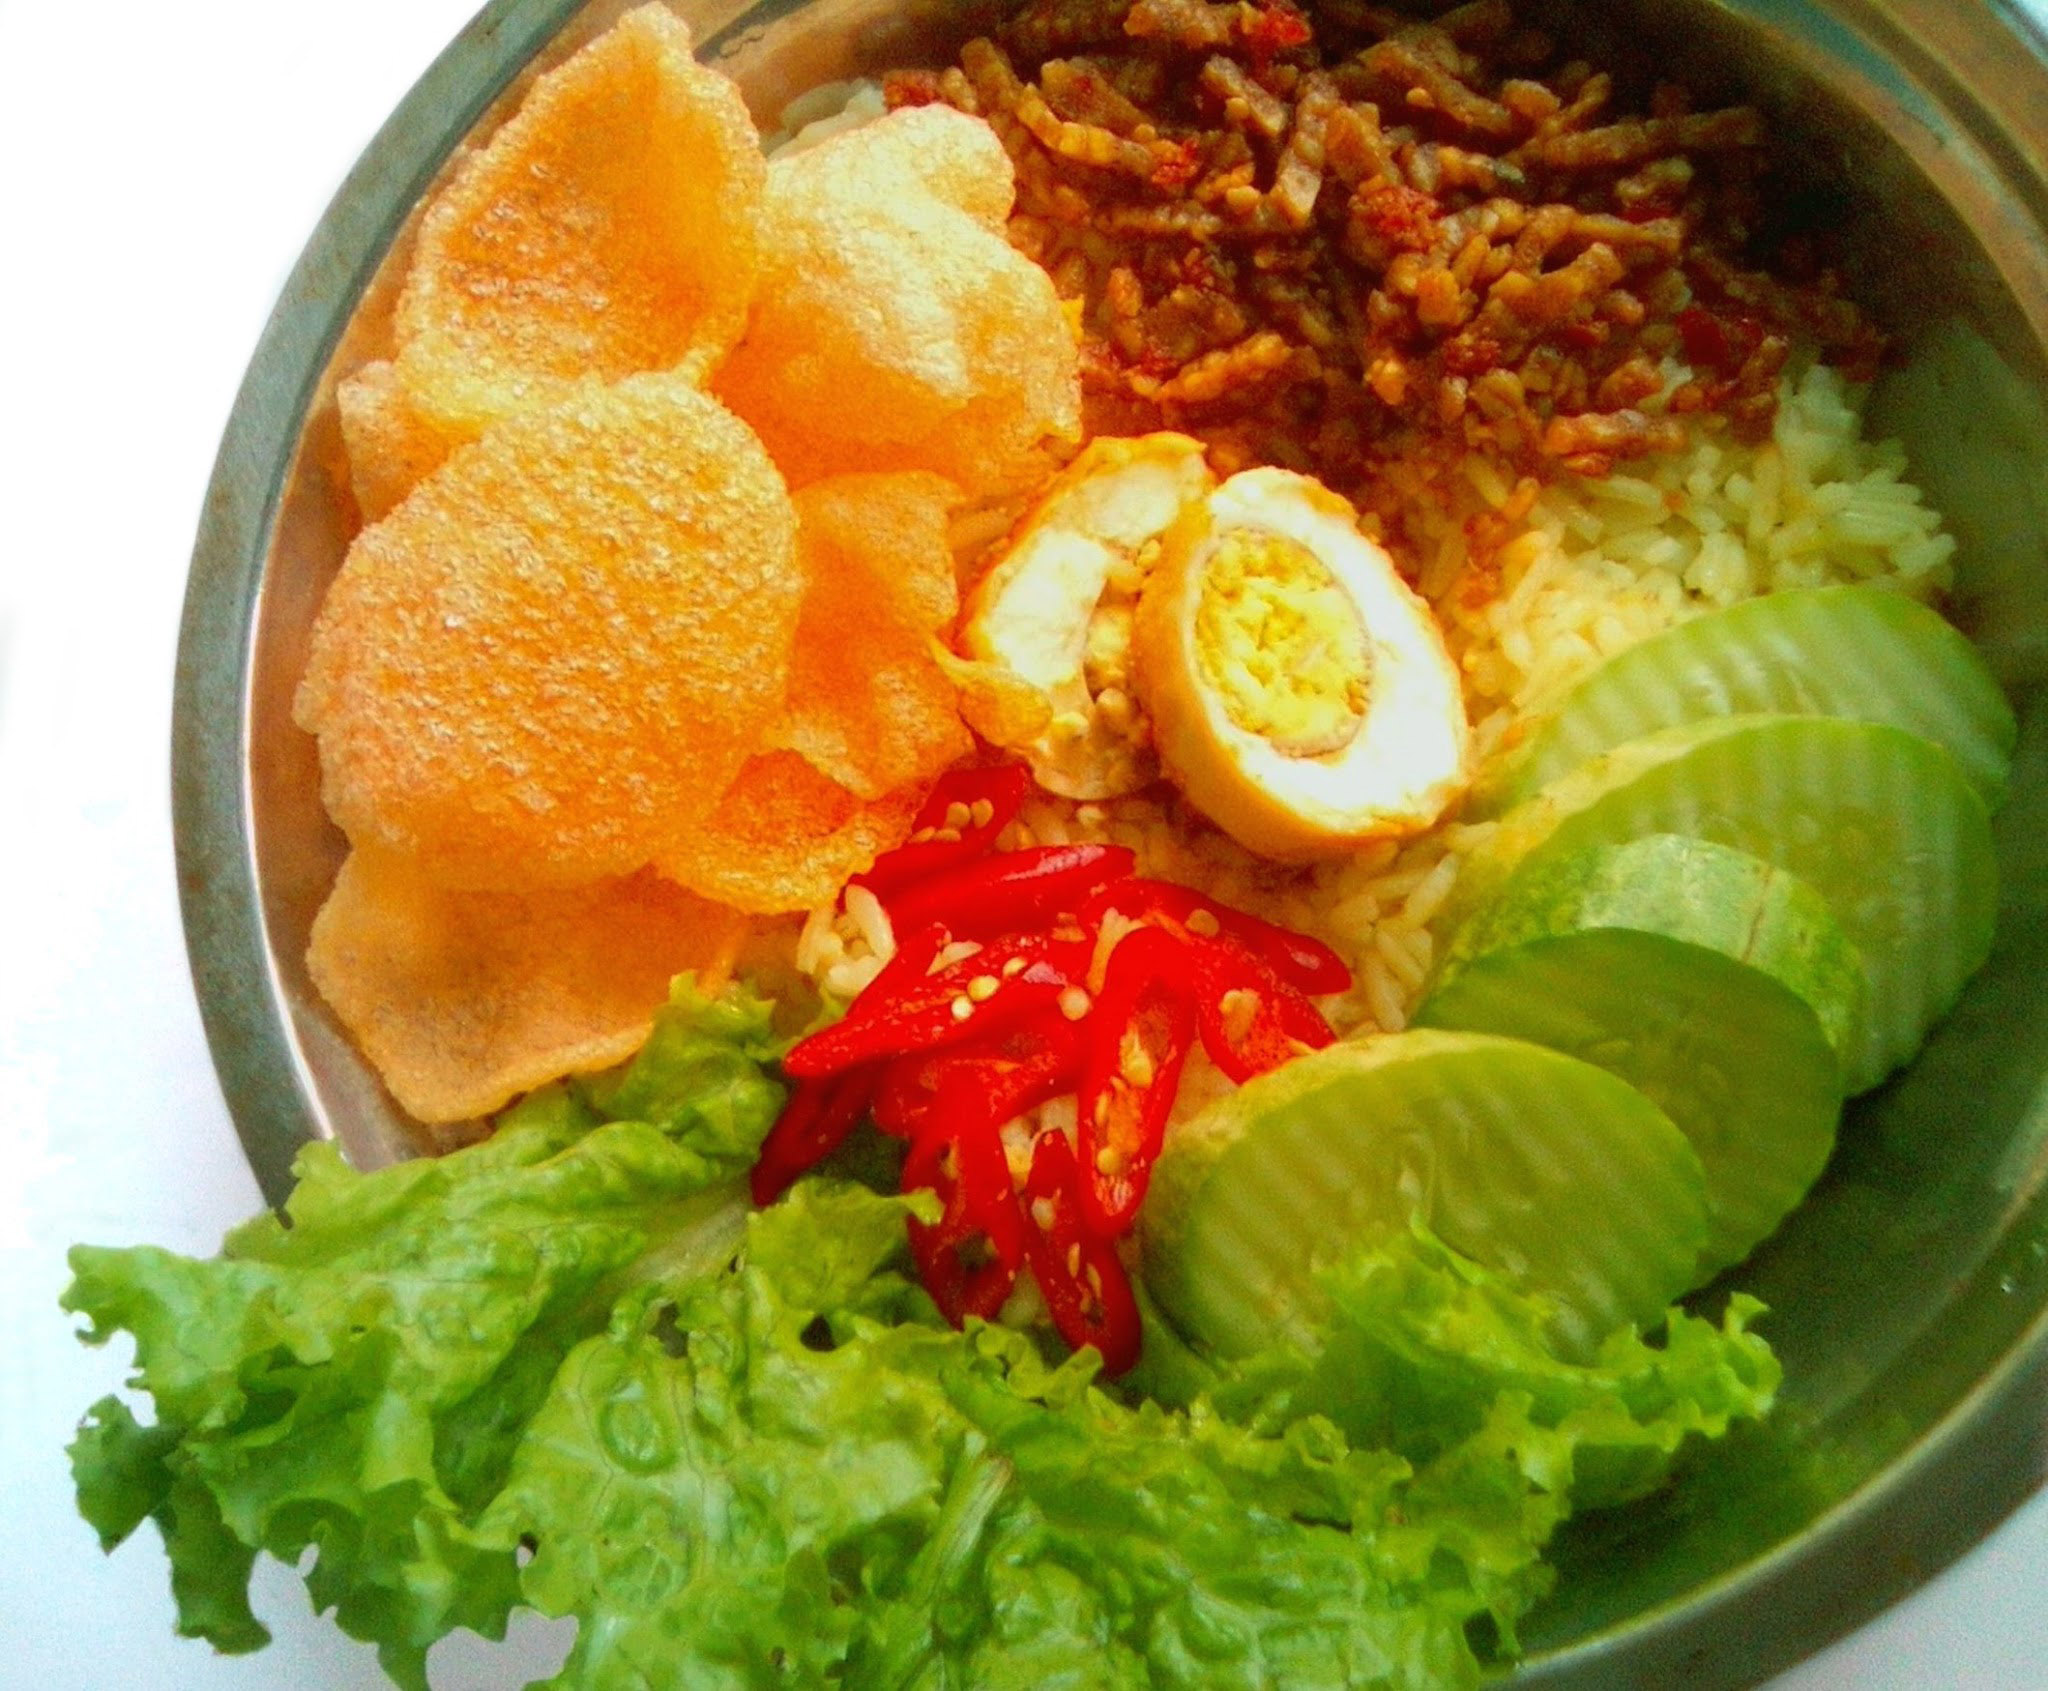 Nasi uduk traditional Indonesian Food image - Free stock photo - Public ...